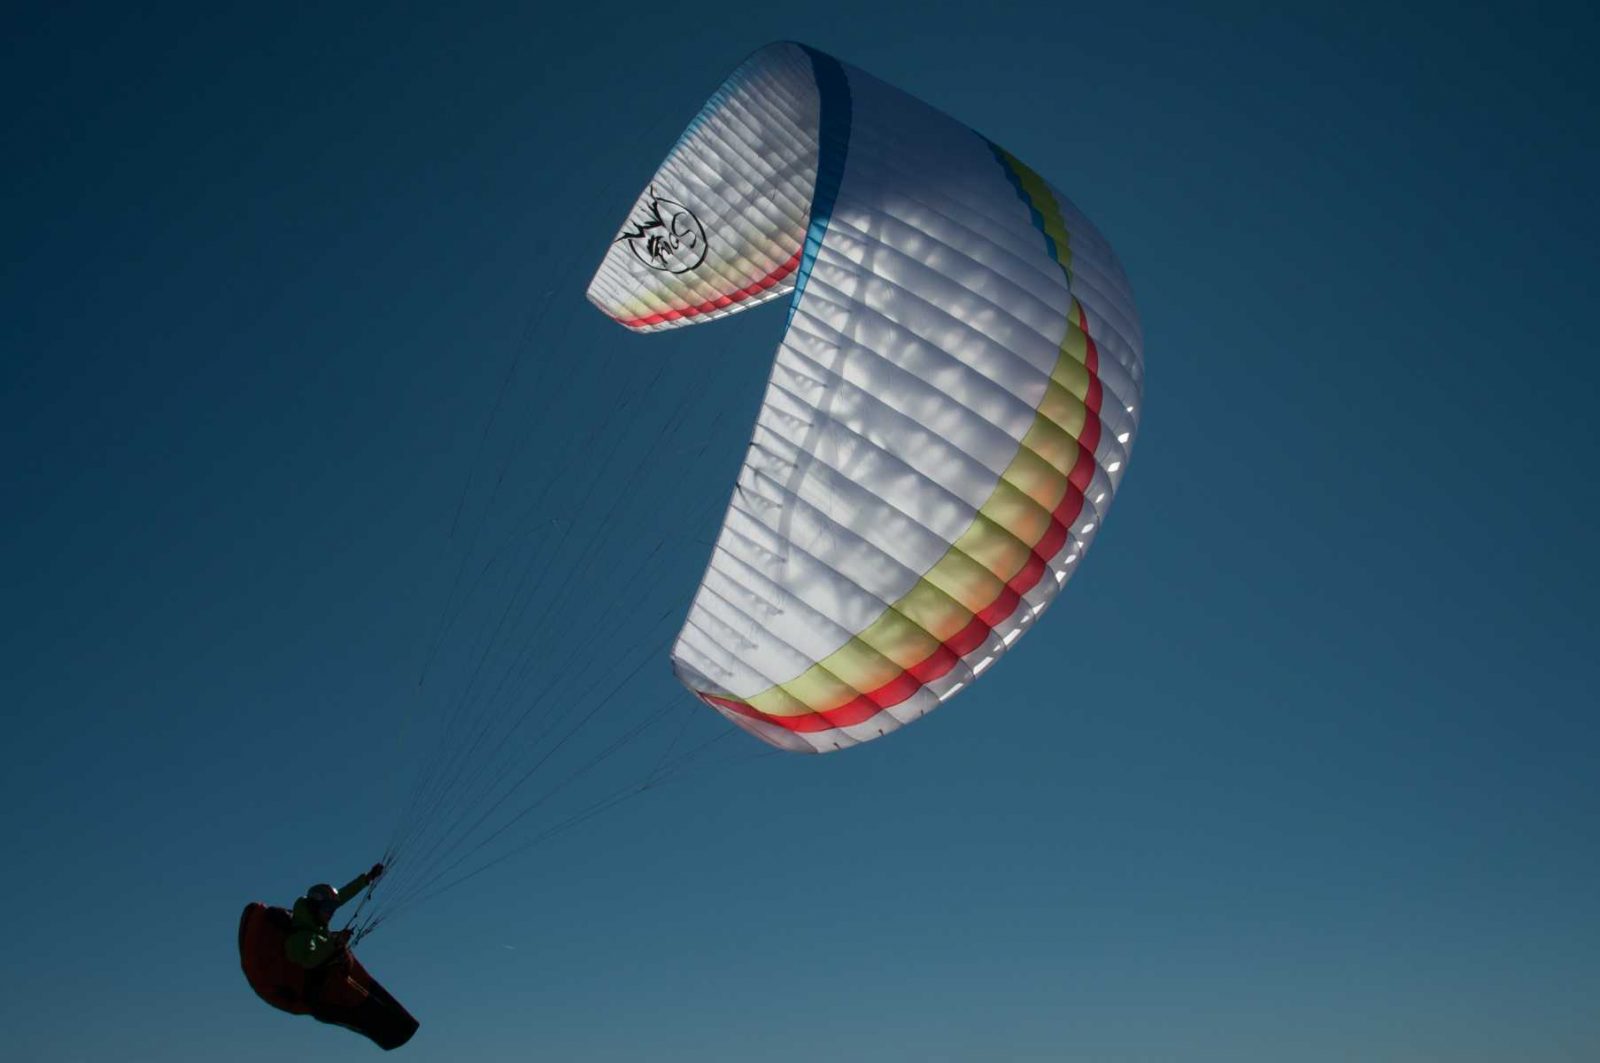 New paraglider AirDesign Soar for sale